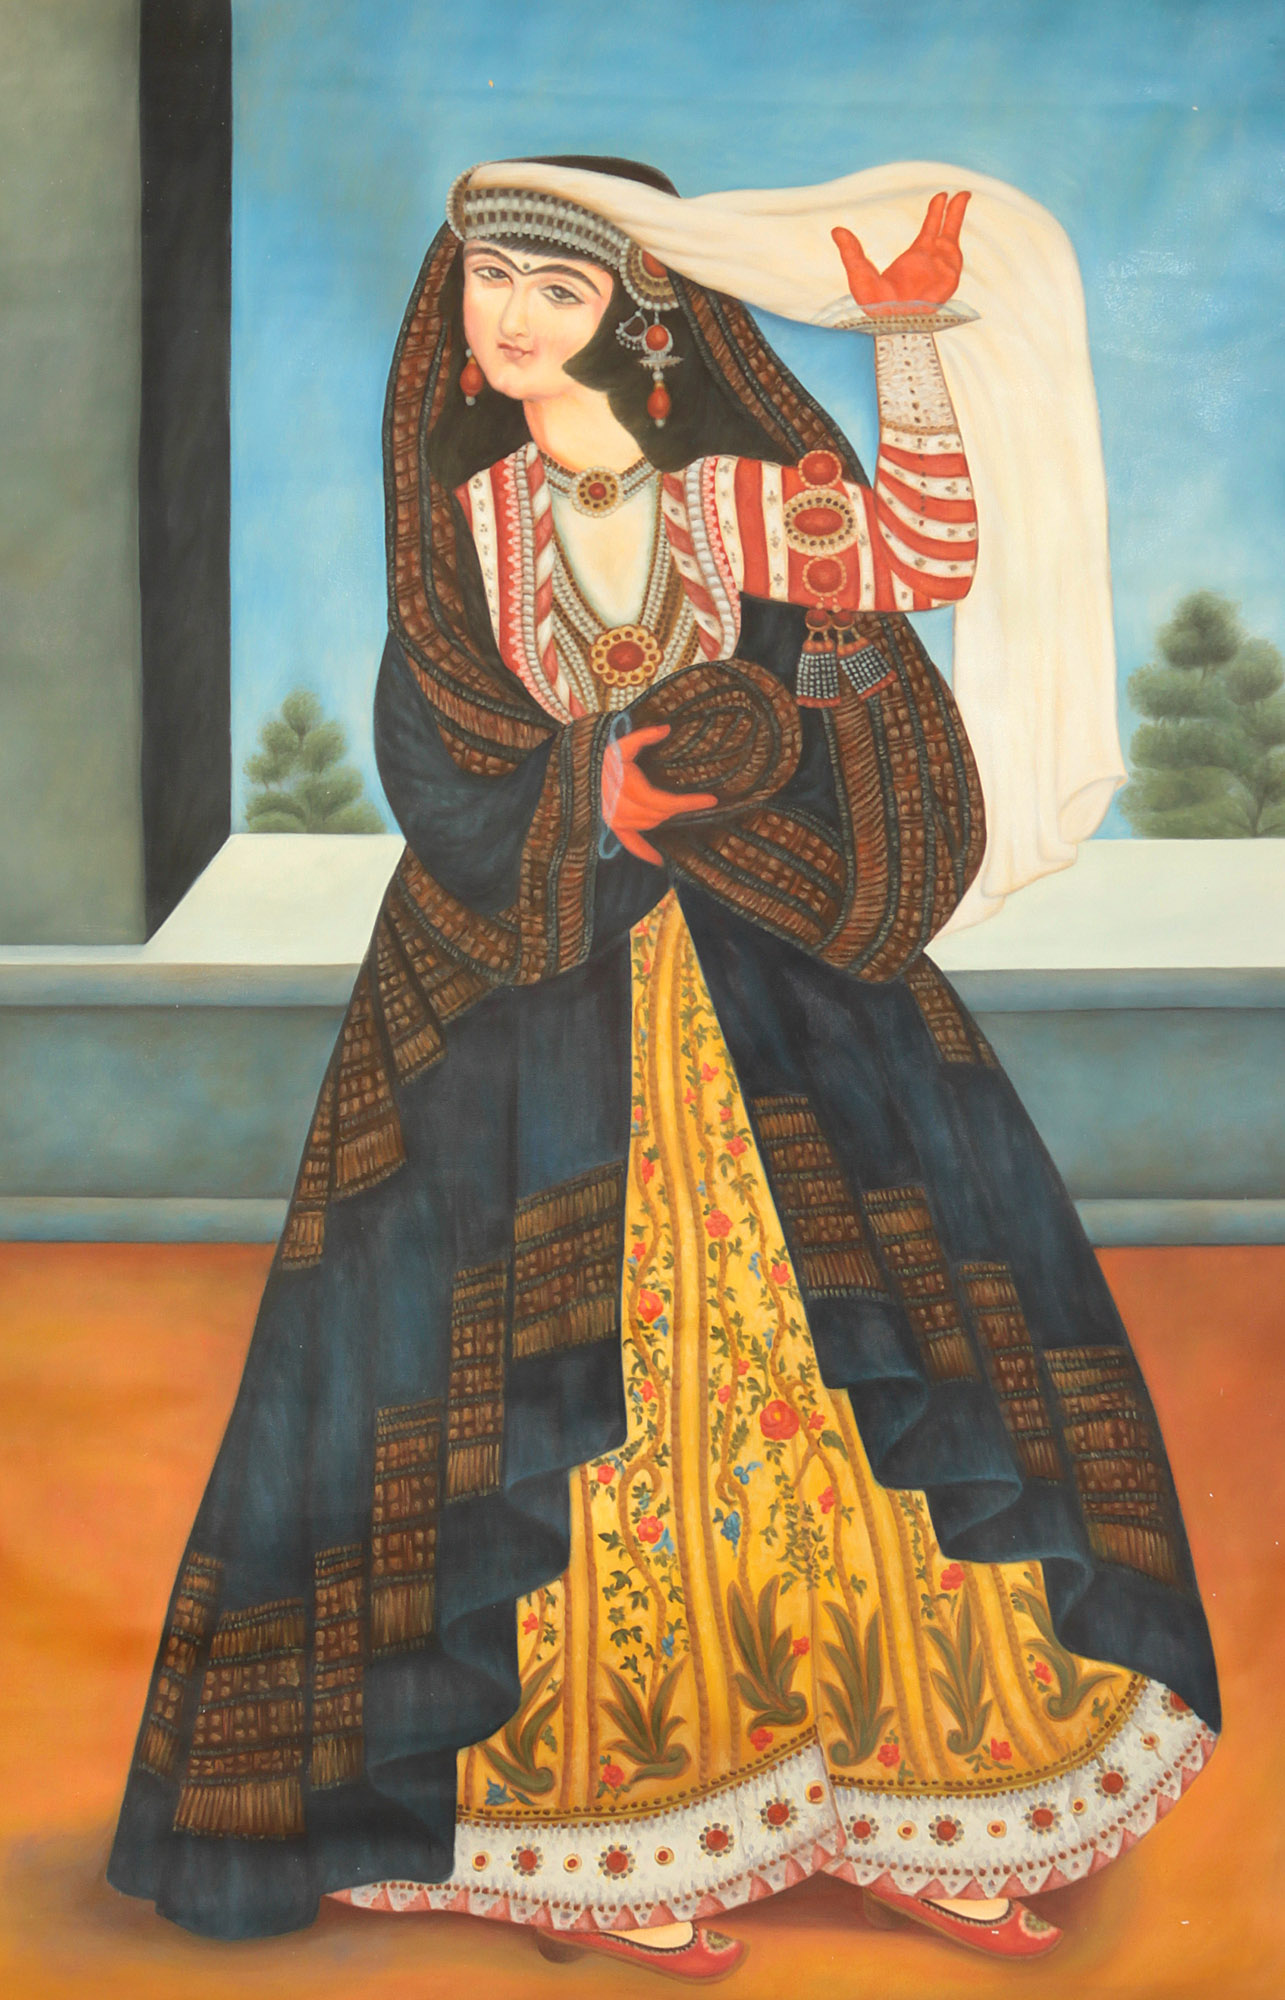 Persian Woman